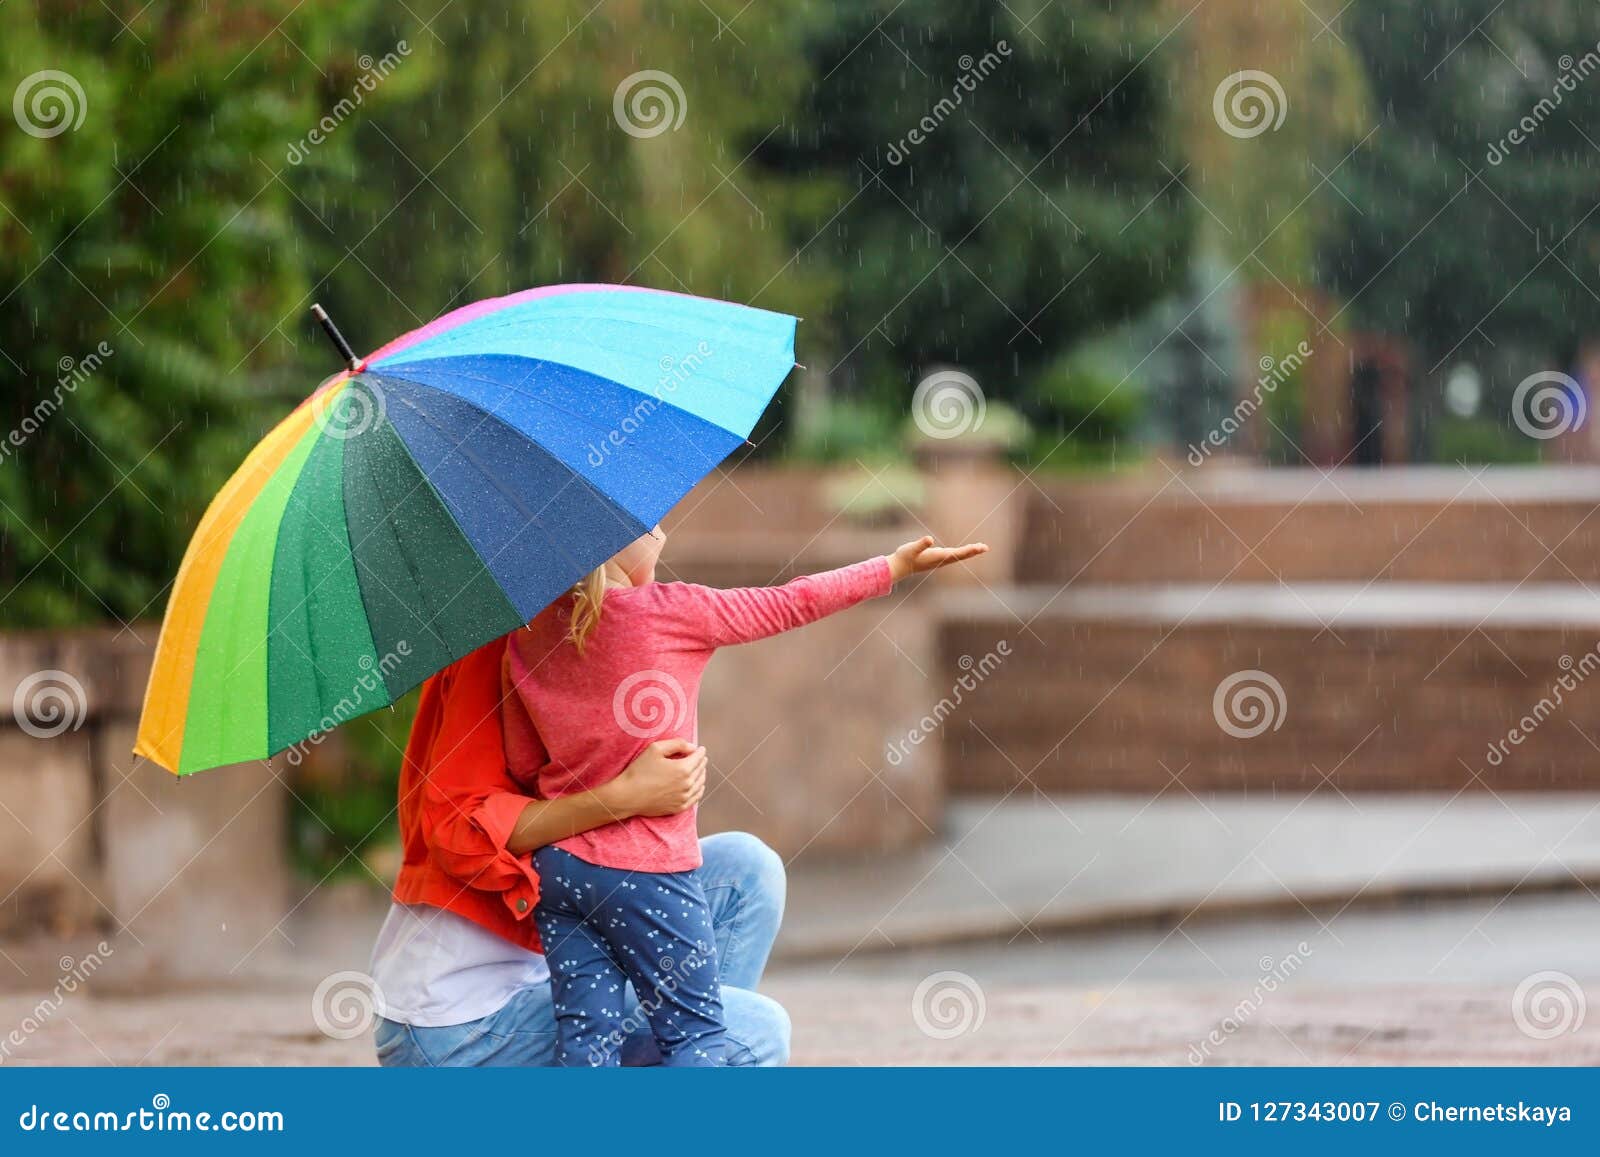 Мама зонтик. Мама с зонтом. Мама с дочкой под зонтиком. Мама и дети под зонтиком. Мать с зонтом.